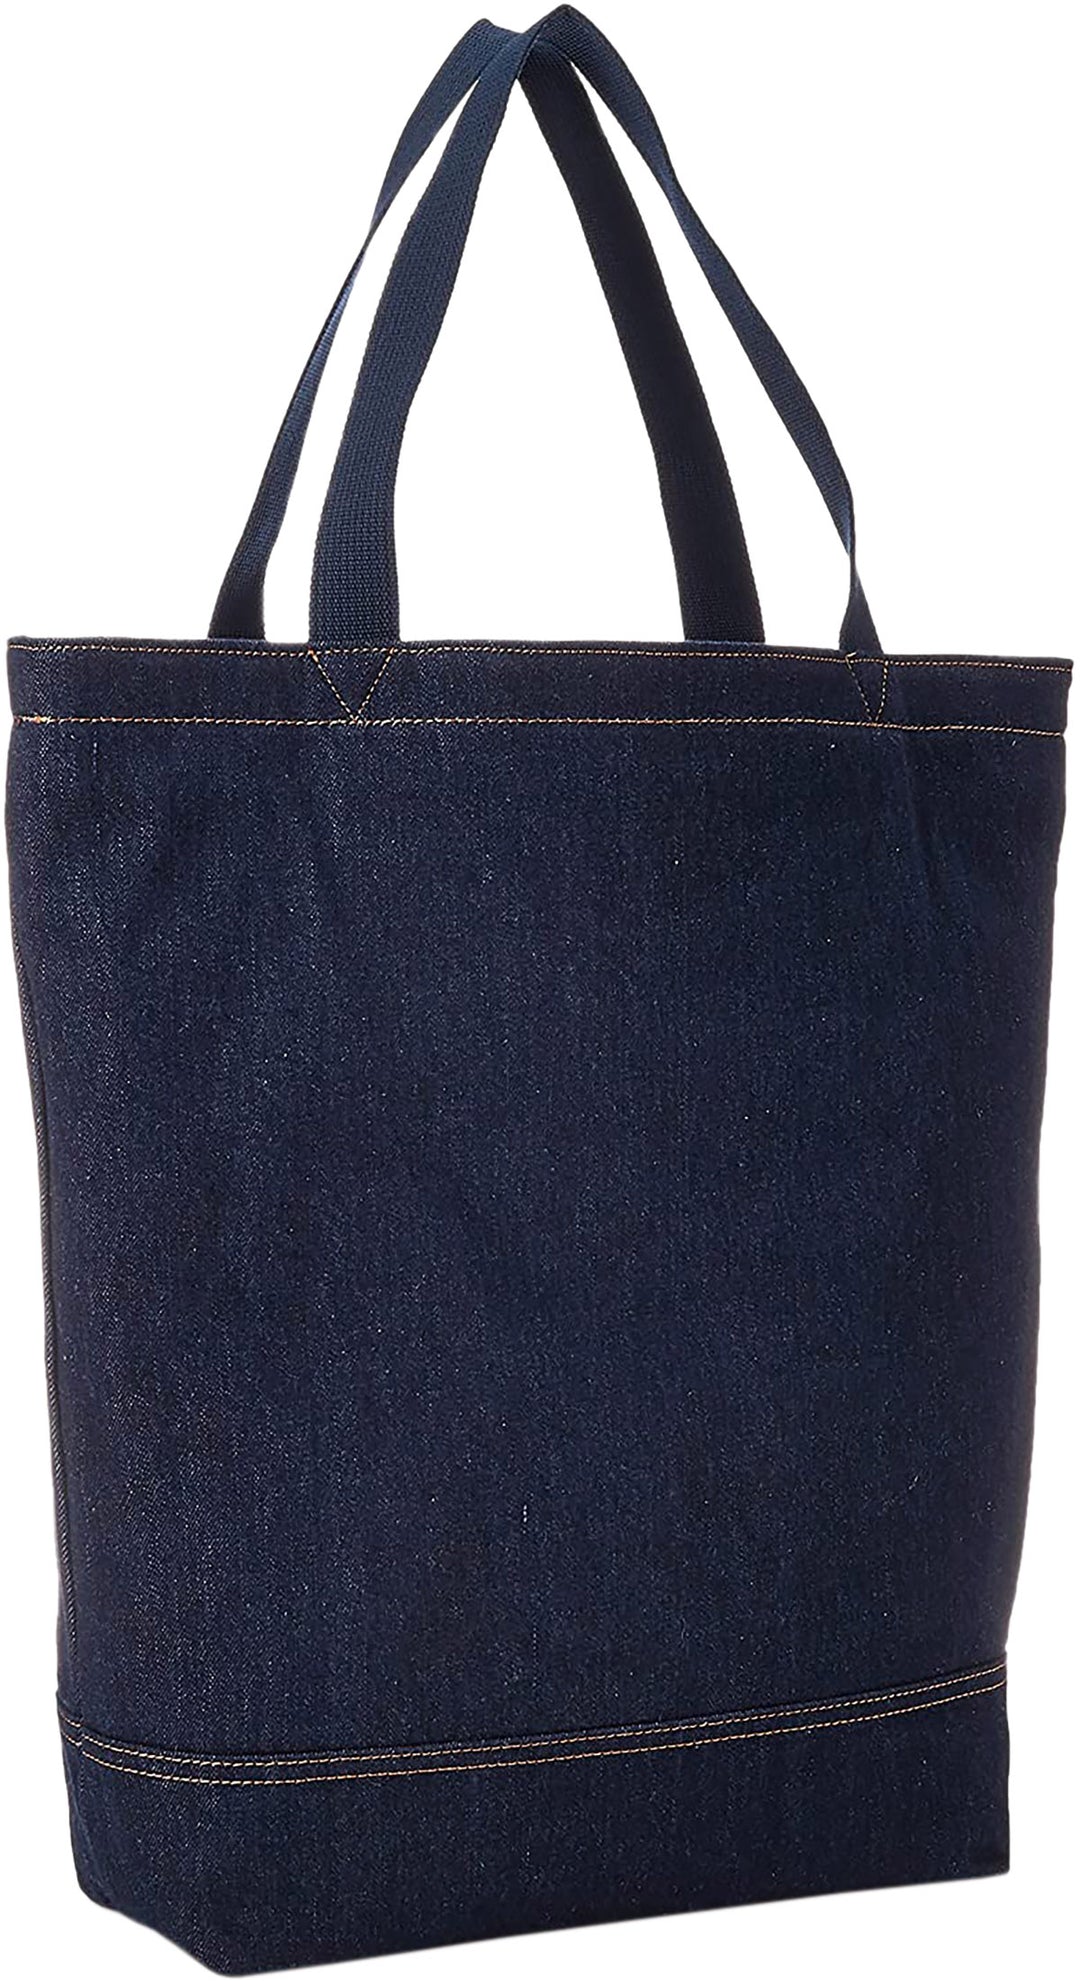 Levi Back Pocket In Navy Blue Denim Bag For Women